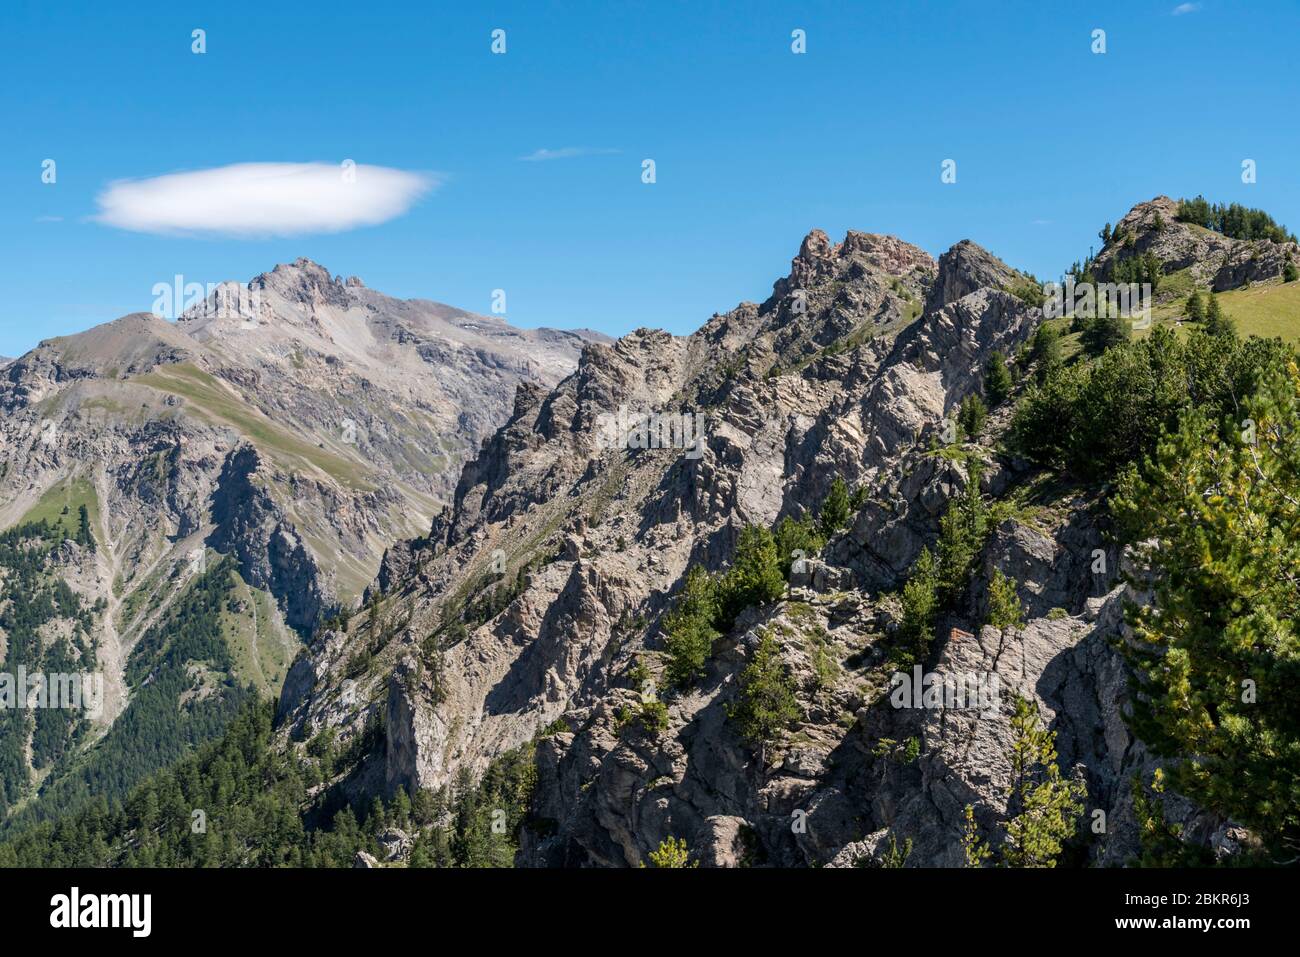 France, Hautes-Alpes (05), Queyras Regional Nature Park, Val d'Escreins Nature Reserve, Guillestre, Col de la Coulette, viewpoint from the Vars ridge between the Col de la Coulette (2362m) and the Col de la Scie (2362m) Stock Photo